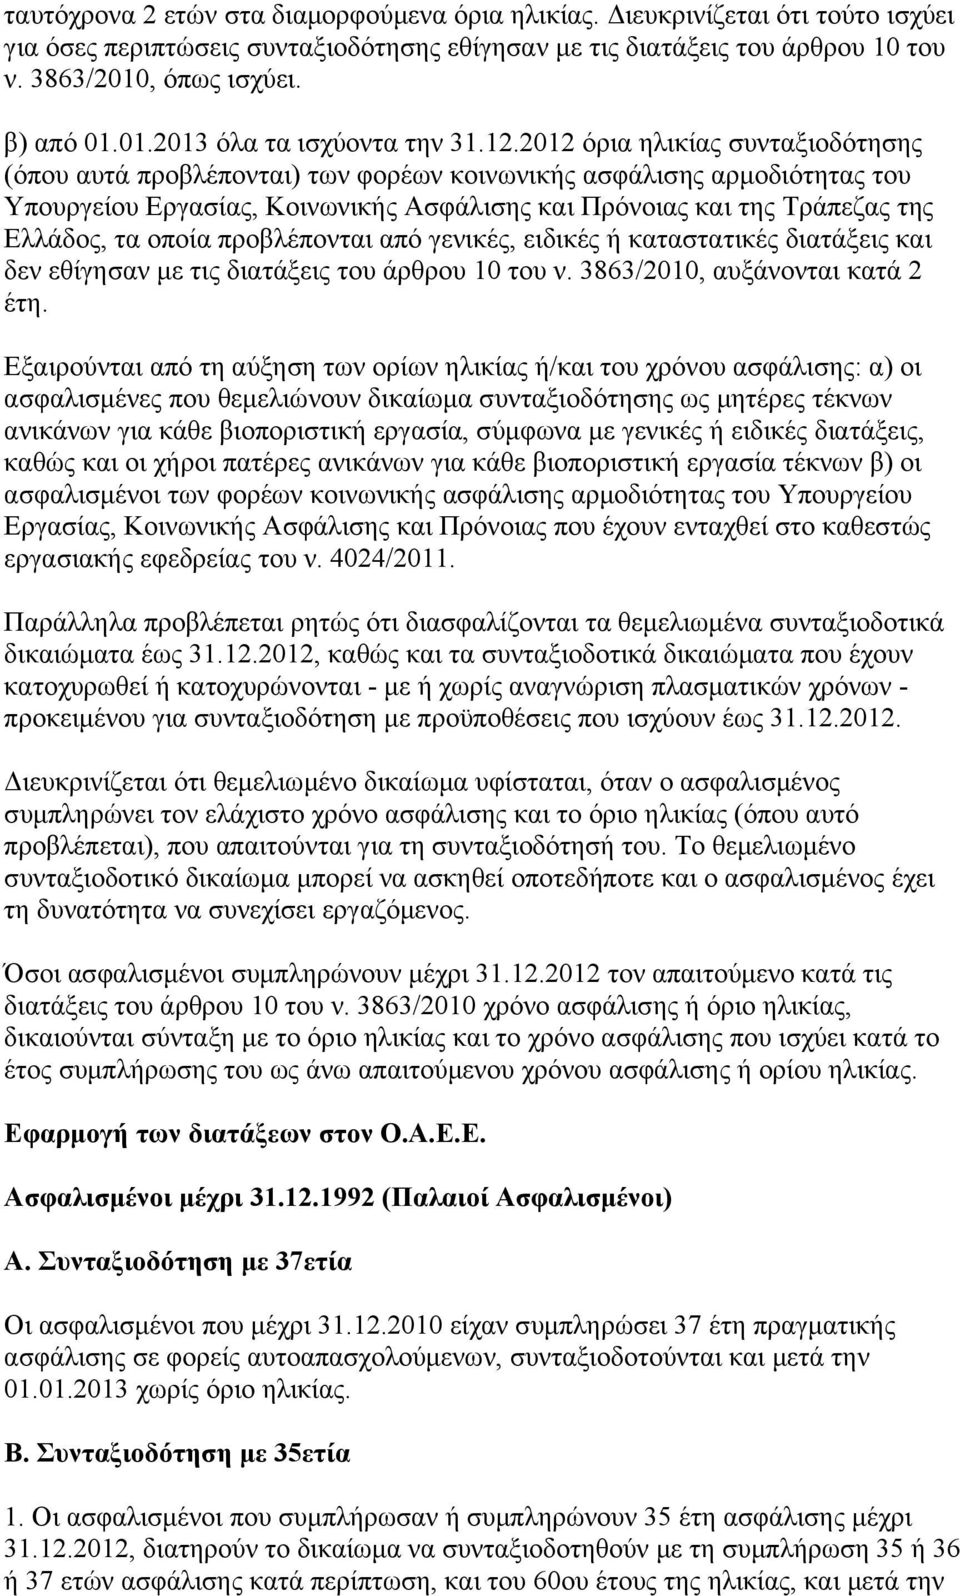 2012 όρια ηλικίας συνταξιοδότησης (όπου αυτά προβλέπονται) των φορέων κοινωνικής ασφάλισης αρμοδιότητας του Υπουργείου Εργασίας, Κοινωνικής Ασφάλισης και Πρόνοιας και της Τράπεζας της Ελλάδος, τα